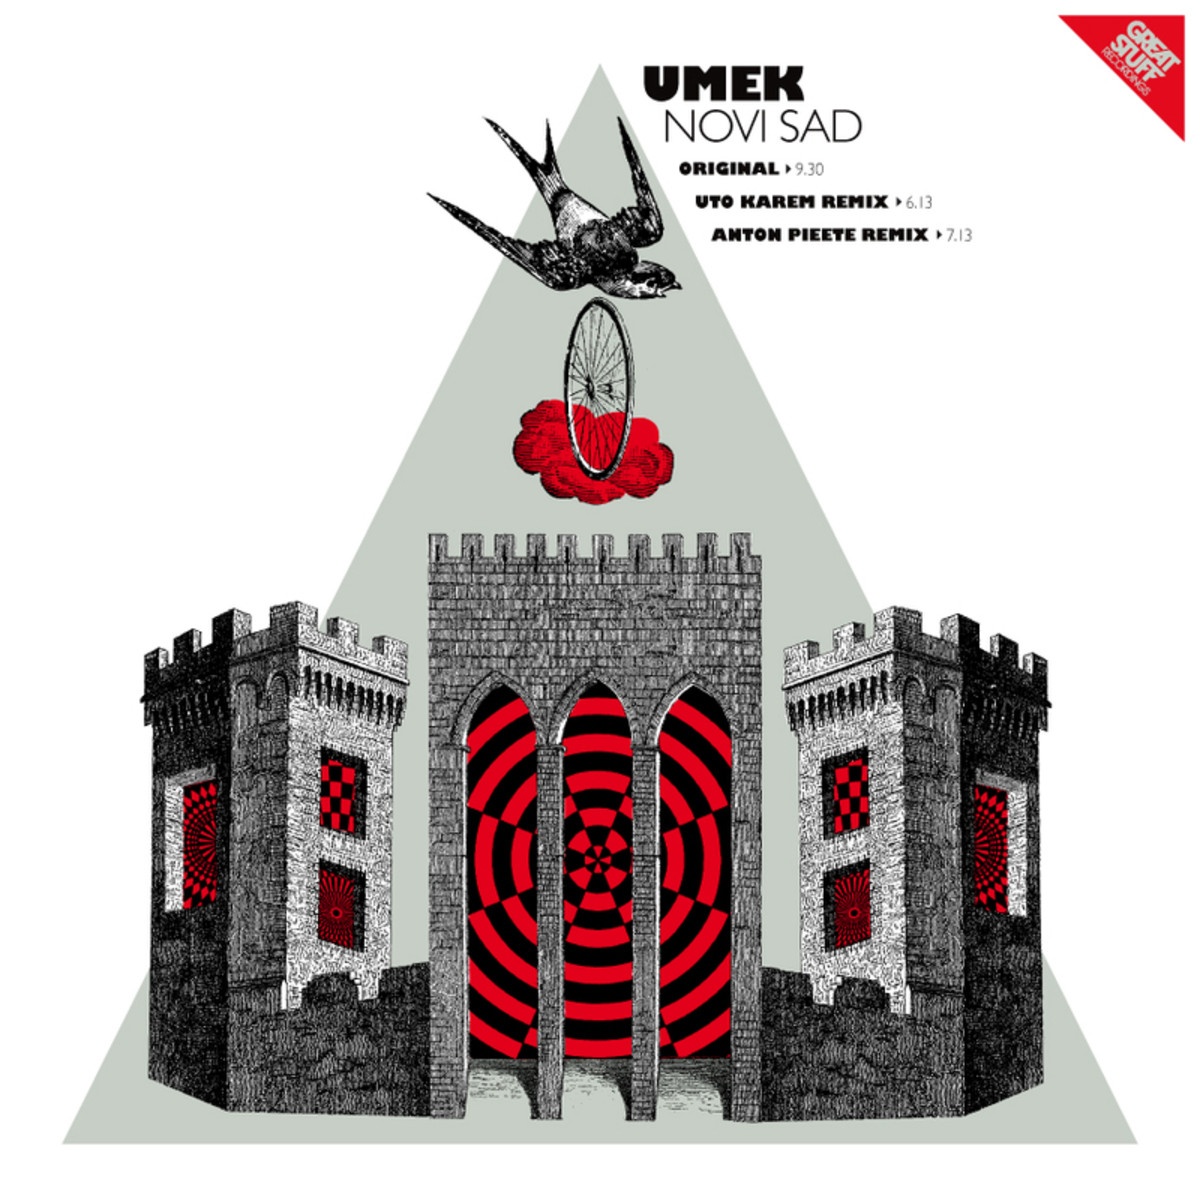 Novi Sad - Uto Karem Remix